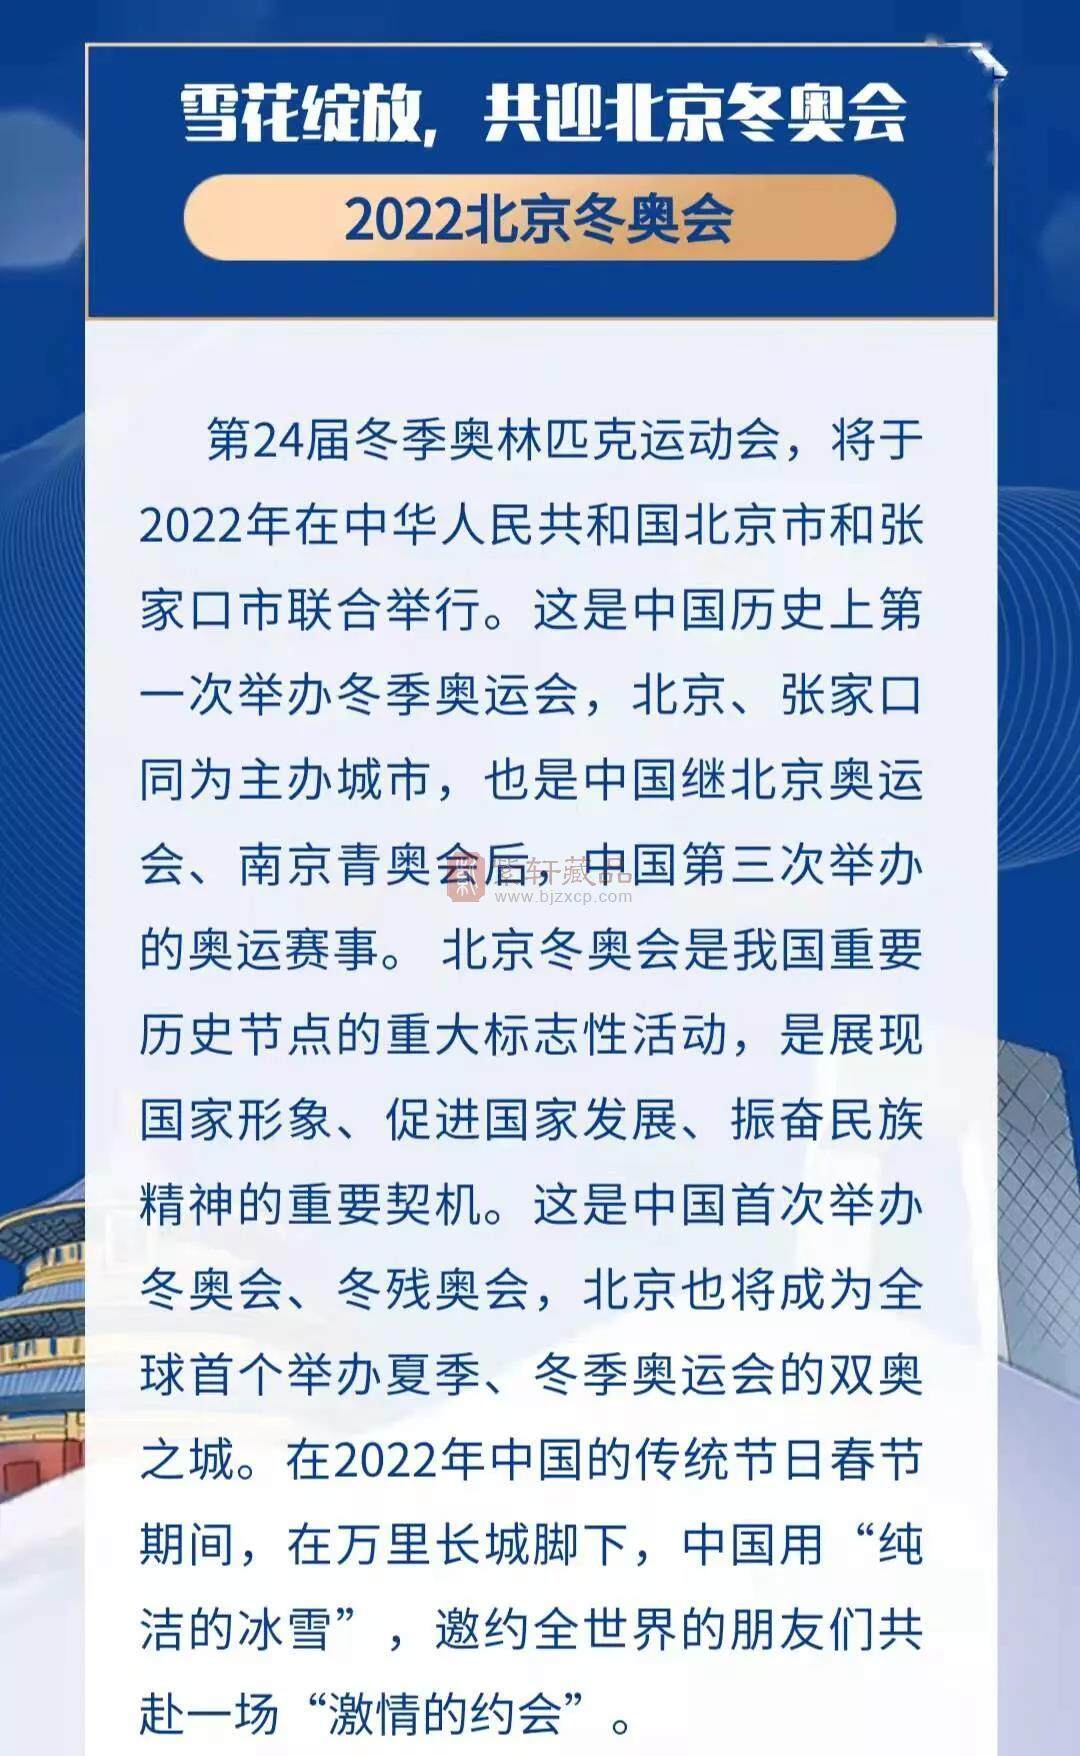 2022北京冬奥会纪念钞冠号大全 收录40个冠号